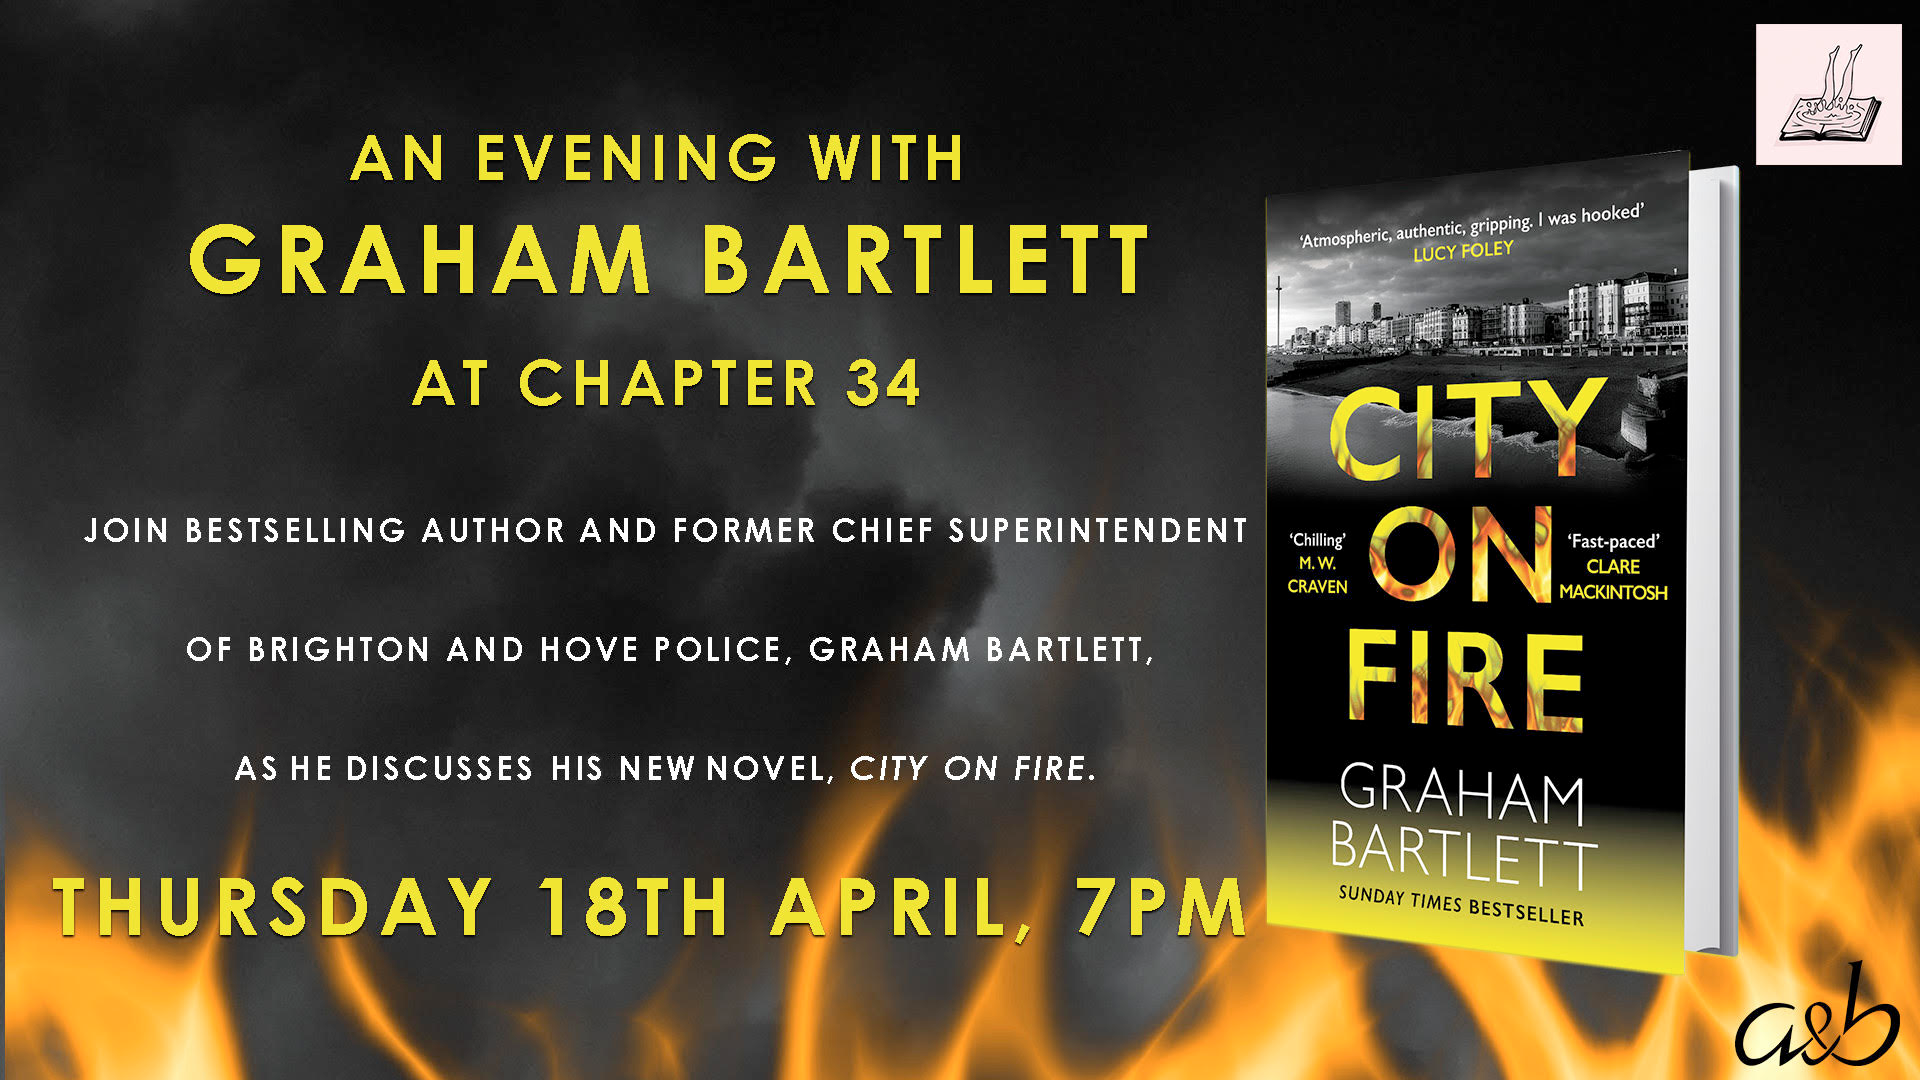 An evening with Graham Bartlett